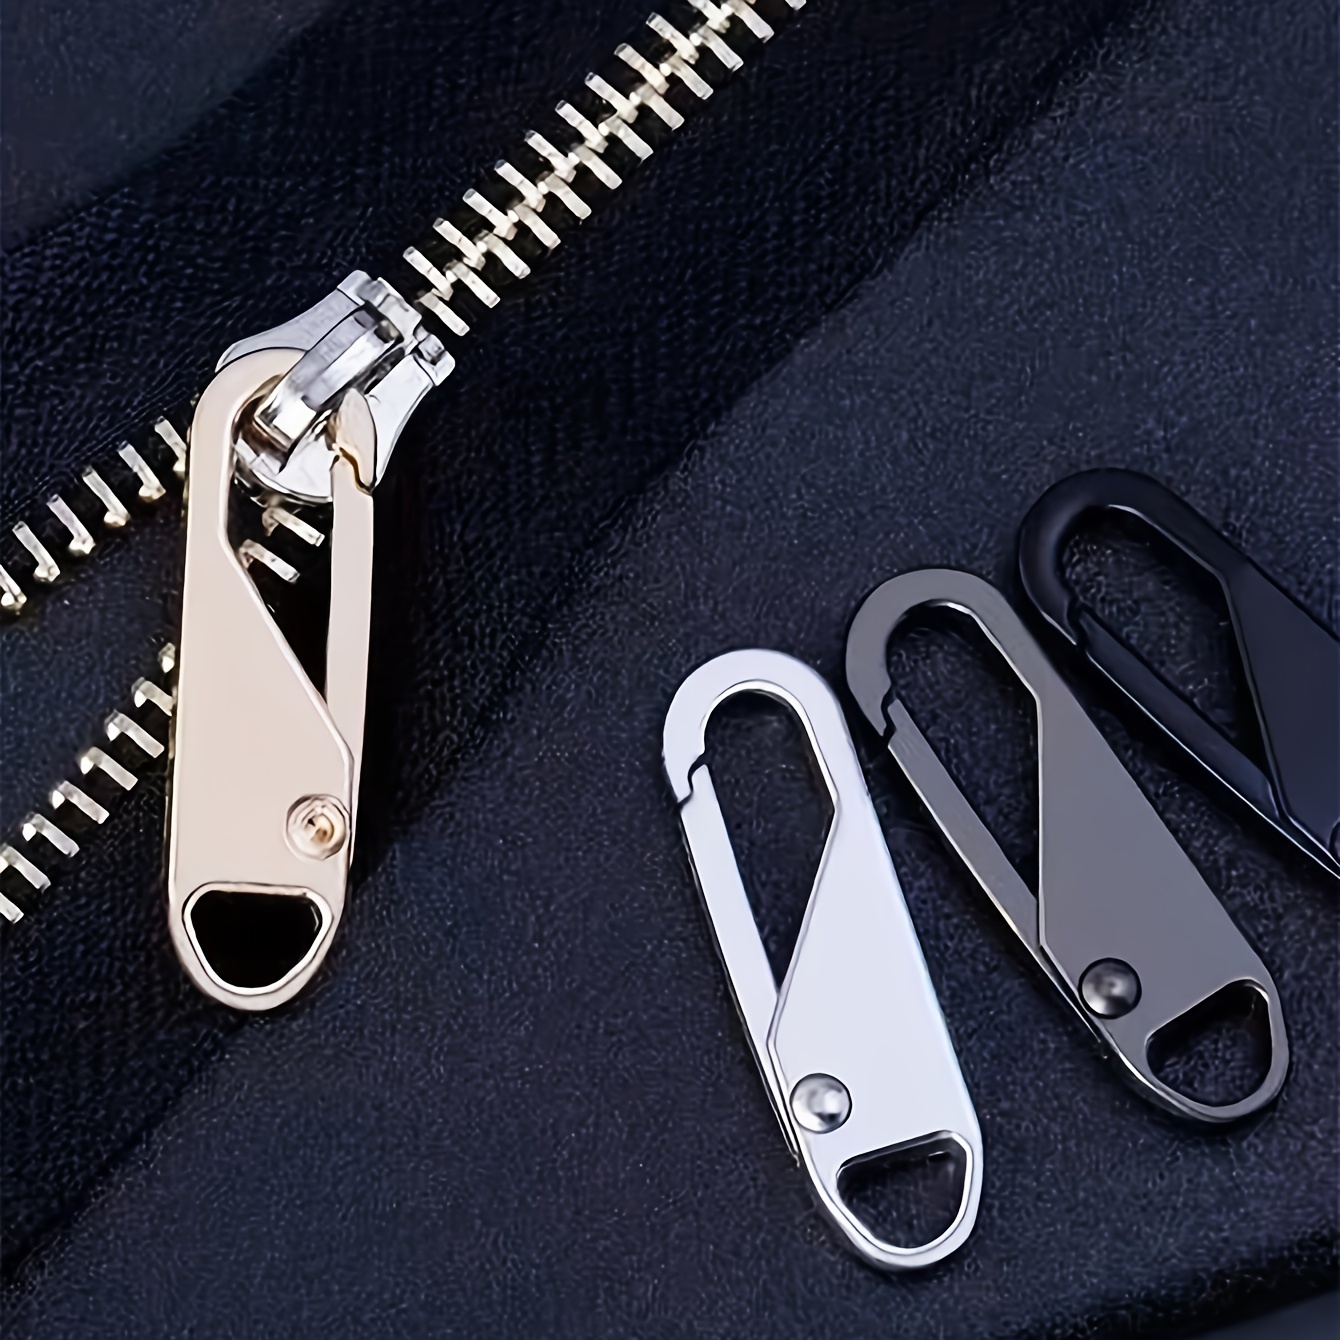 10 Pcs Decorative Zipper Pulls Instant Fixer Metal Tags Label